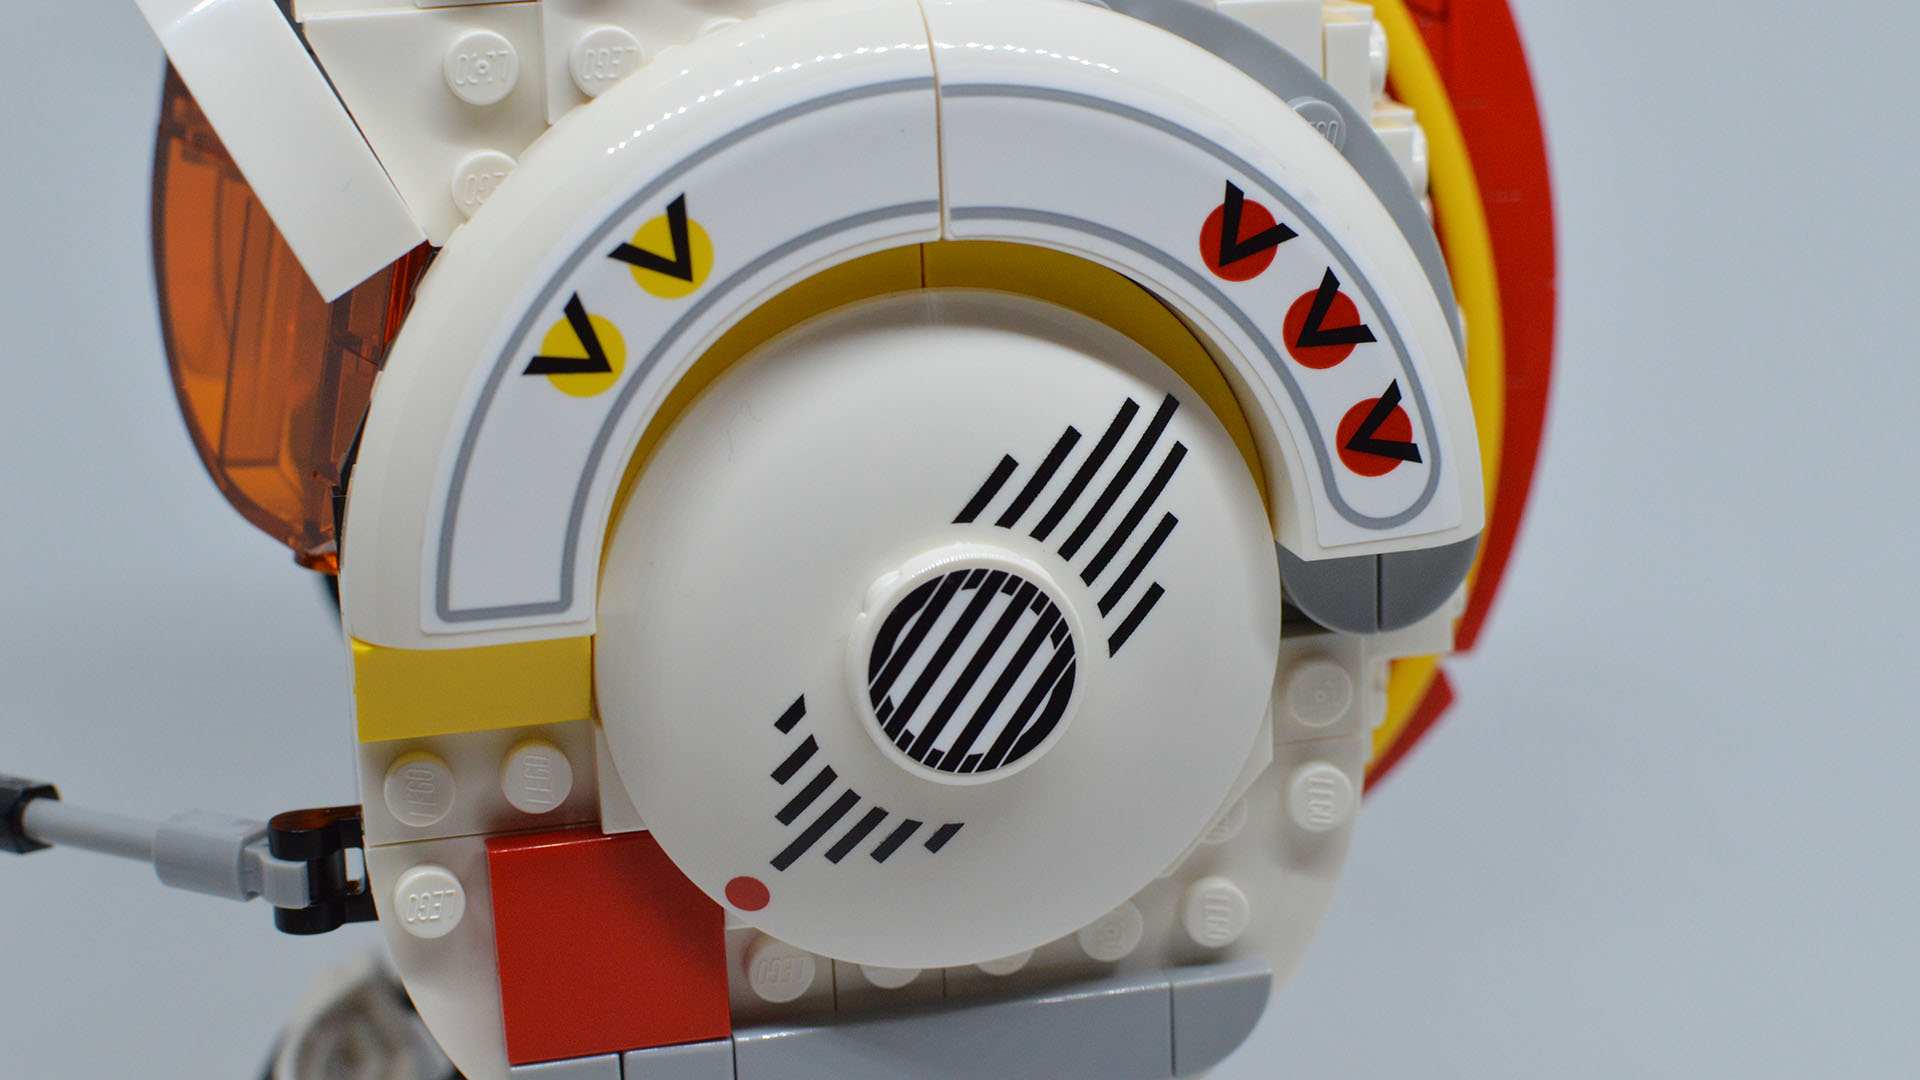 Lego Star Wars Luke Skywalker (Red Five) Helmet